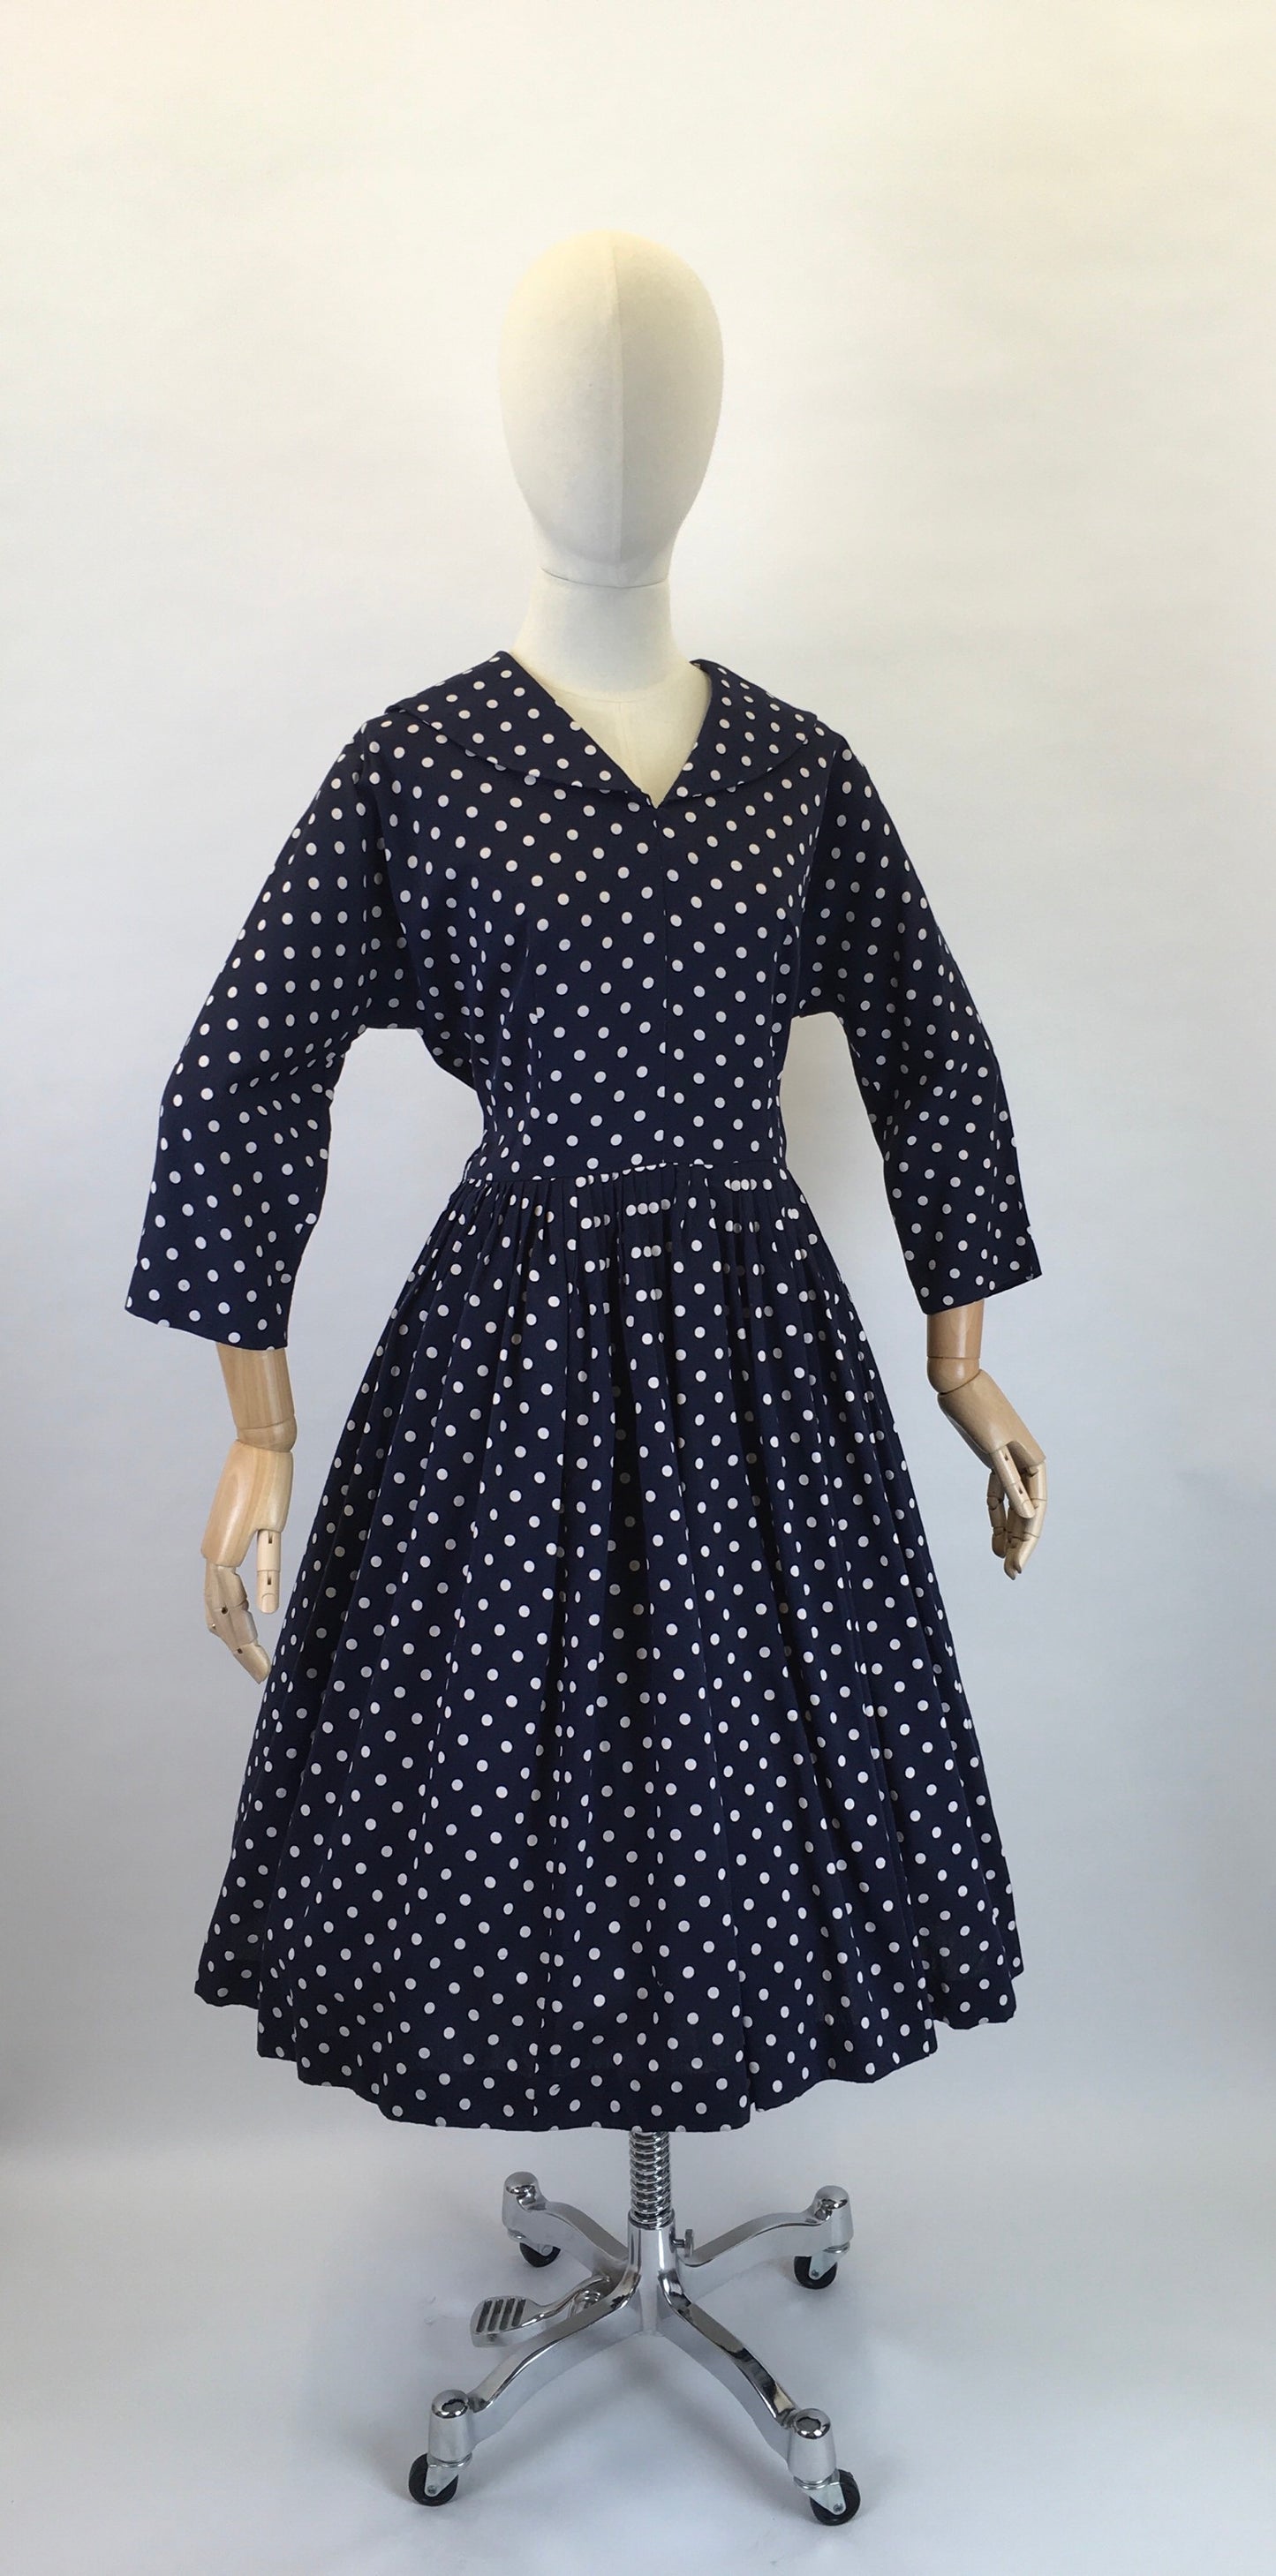 Original 1950s Lightweight Cotton Day Dress - In a Fabulous Deep Navy Polka Dot